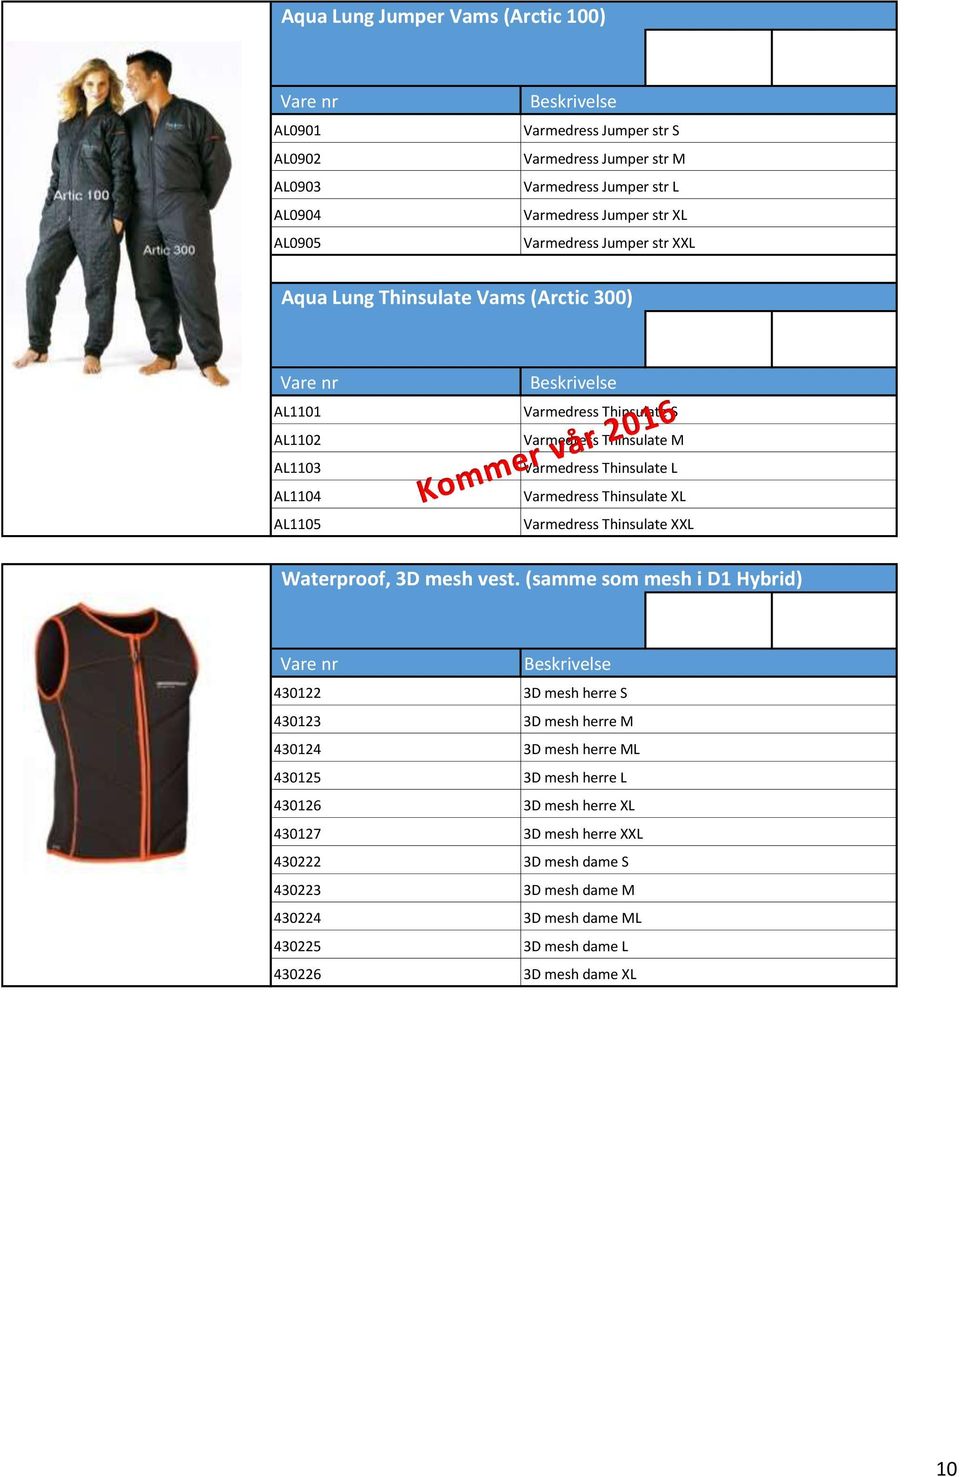 Varmedress Thinsulate XL Varmedress Thinsulate XXL Waterproof, 3D mesh vest.